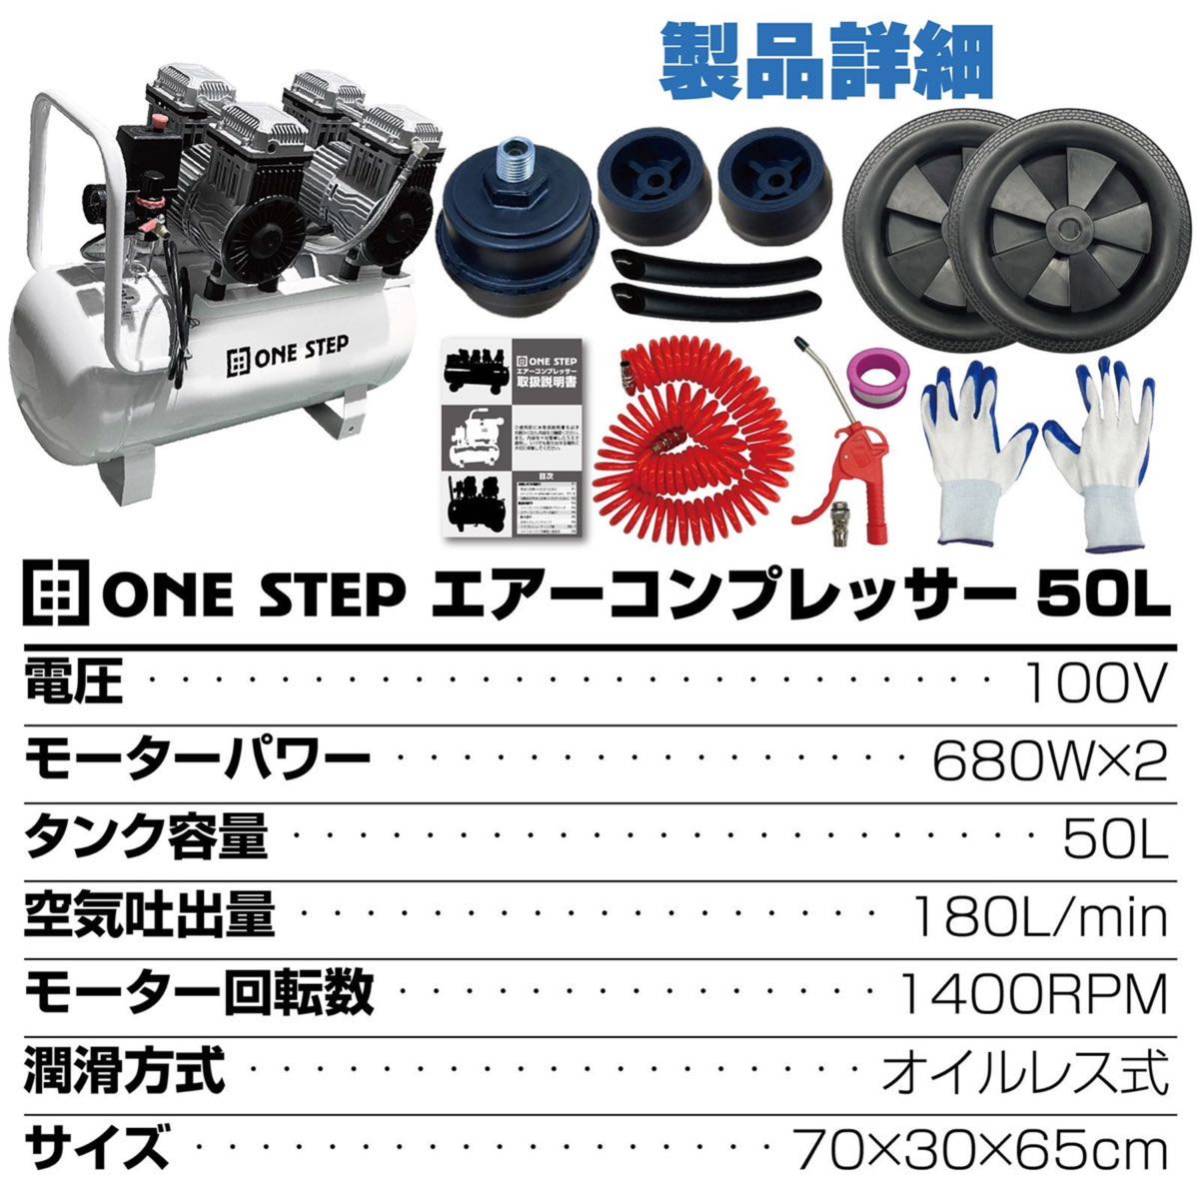 オイルレス エアーコンプレッサー 低騒音 大口径ツールセット付(50L